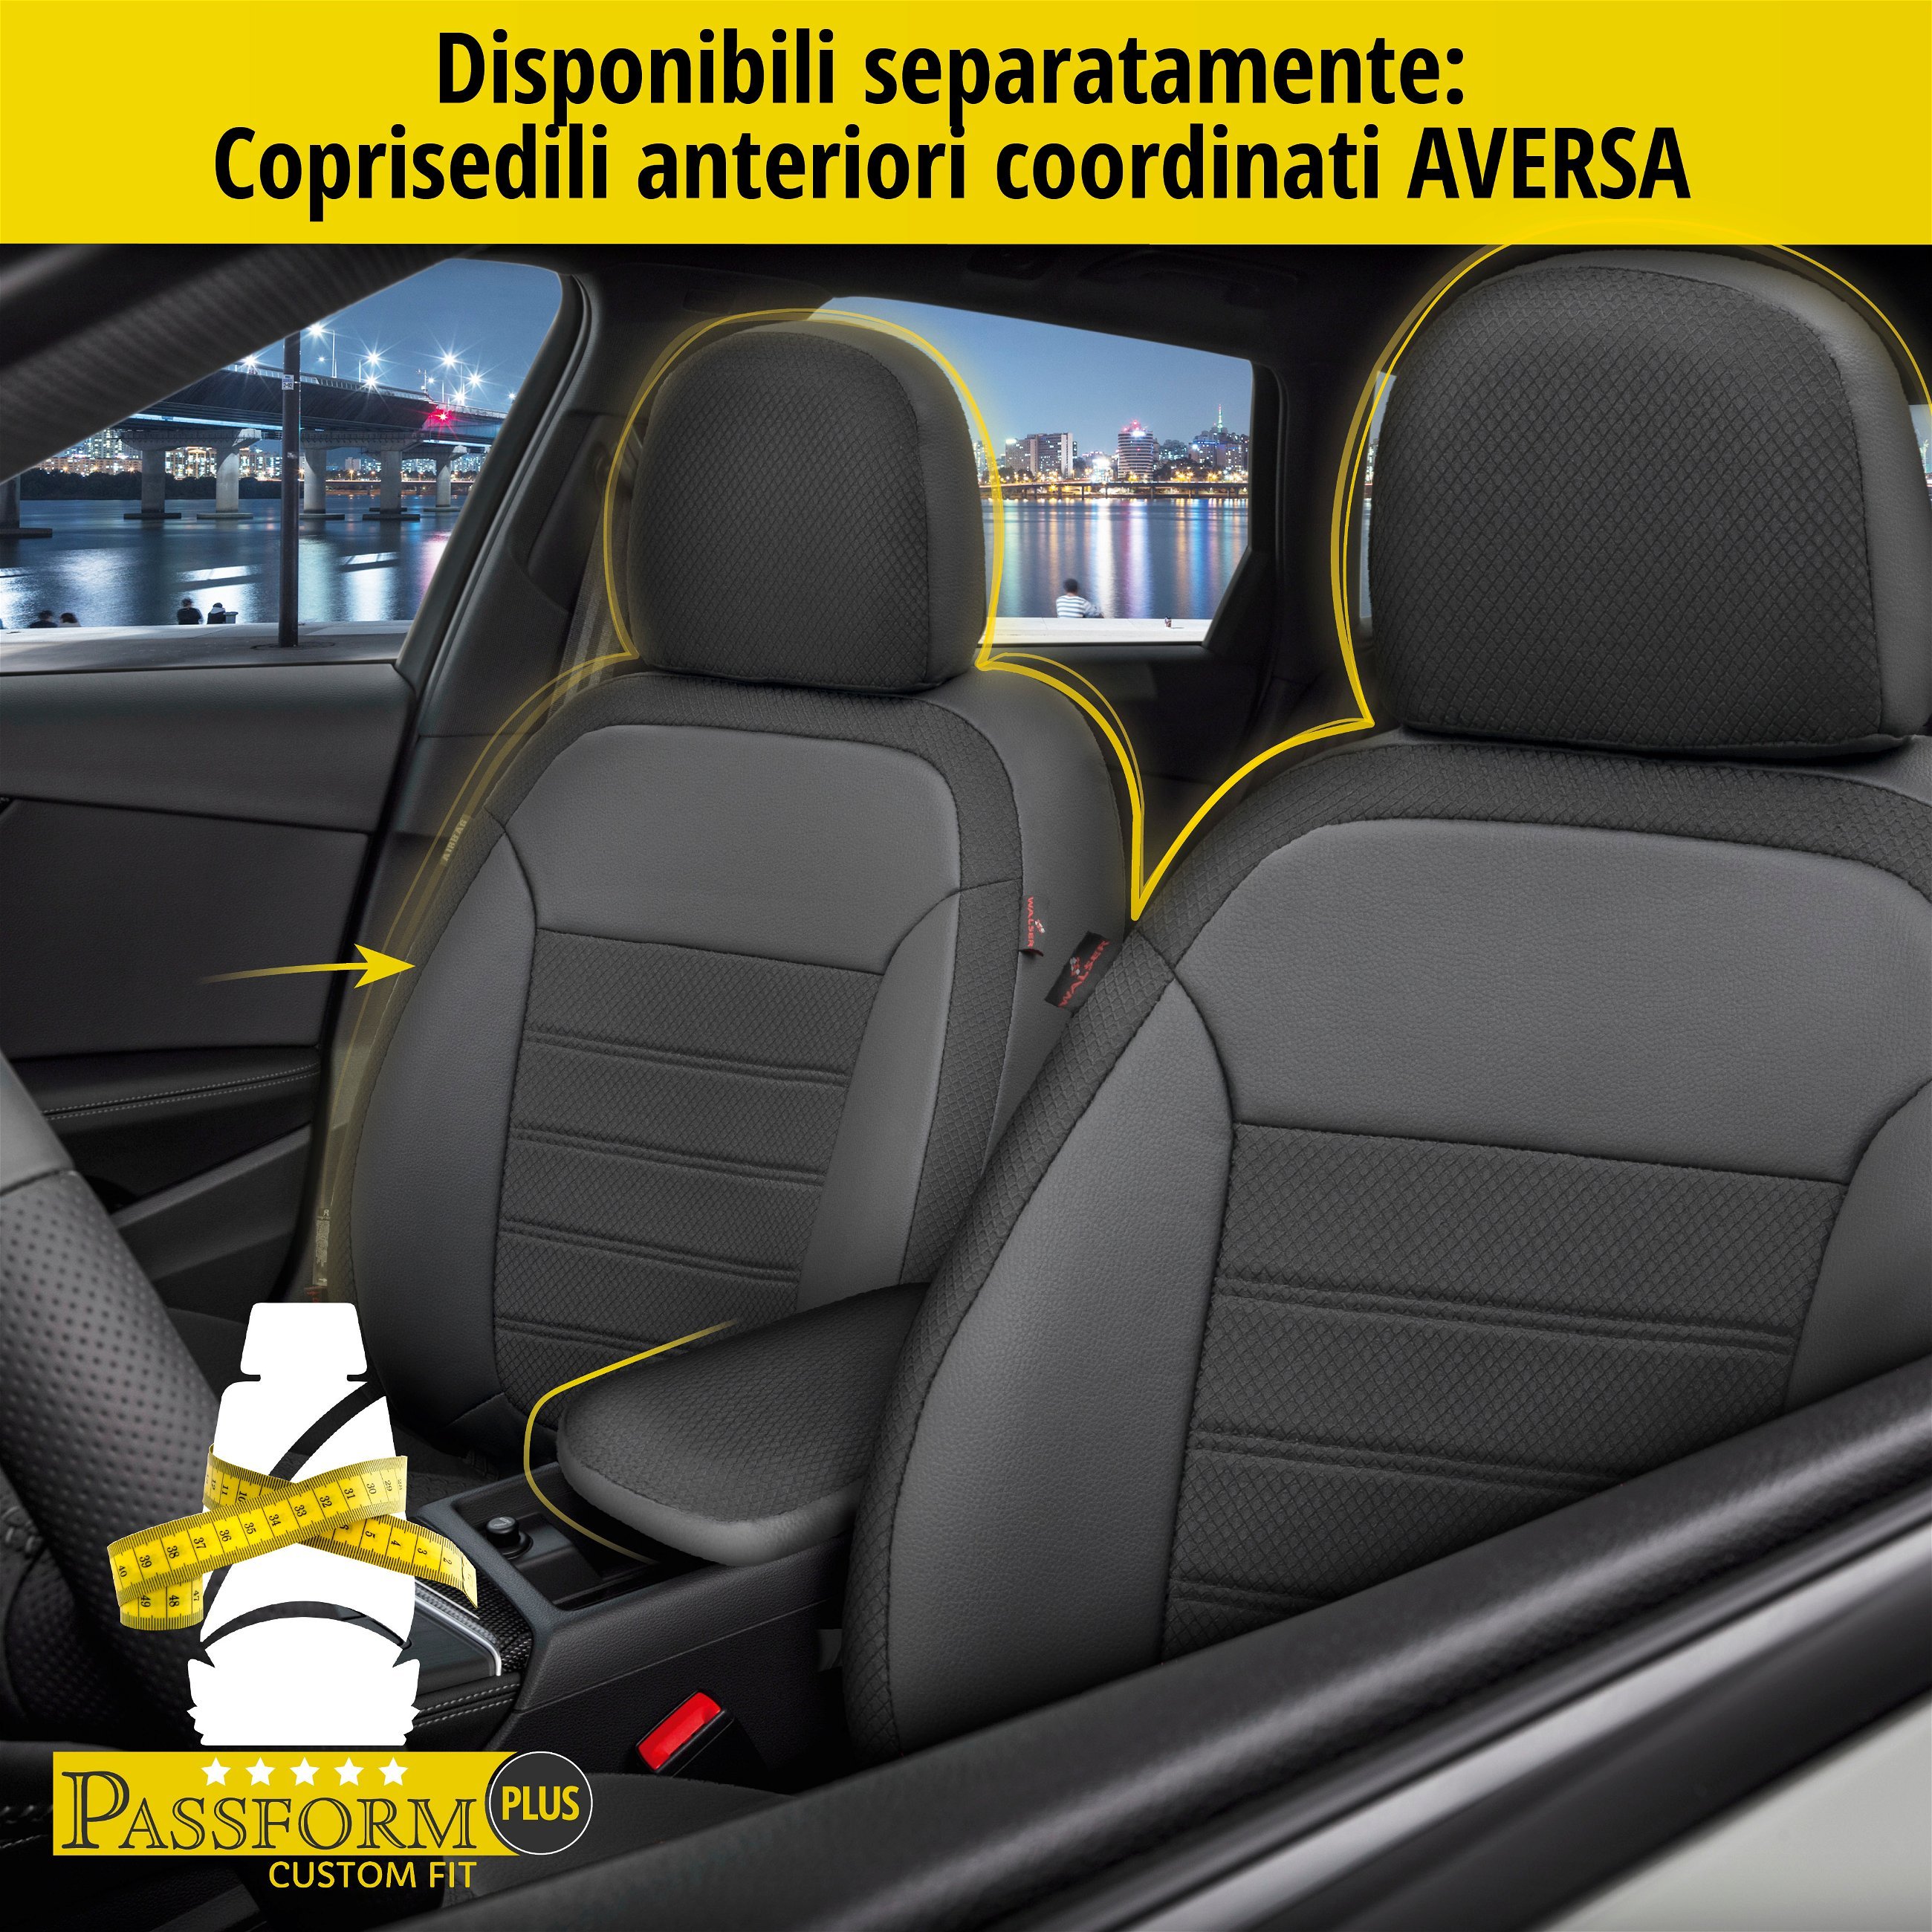 Coprisedili Aversa per Fiat Grande Punto (199) 06/2005-Oggi, 1 coprisedili posteriore per sedili normali